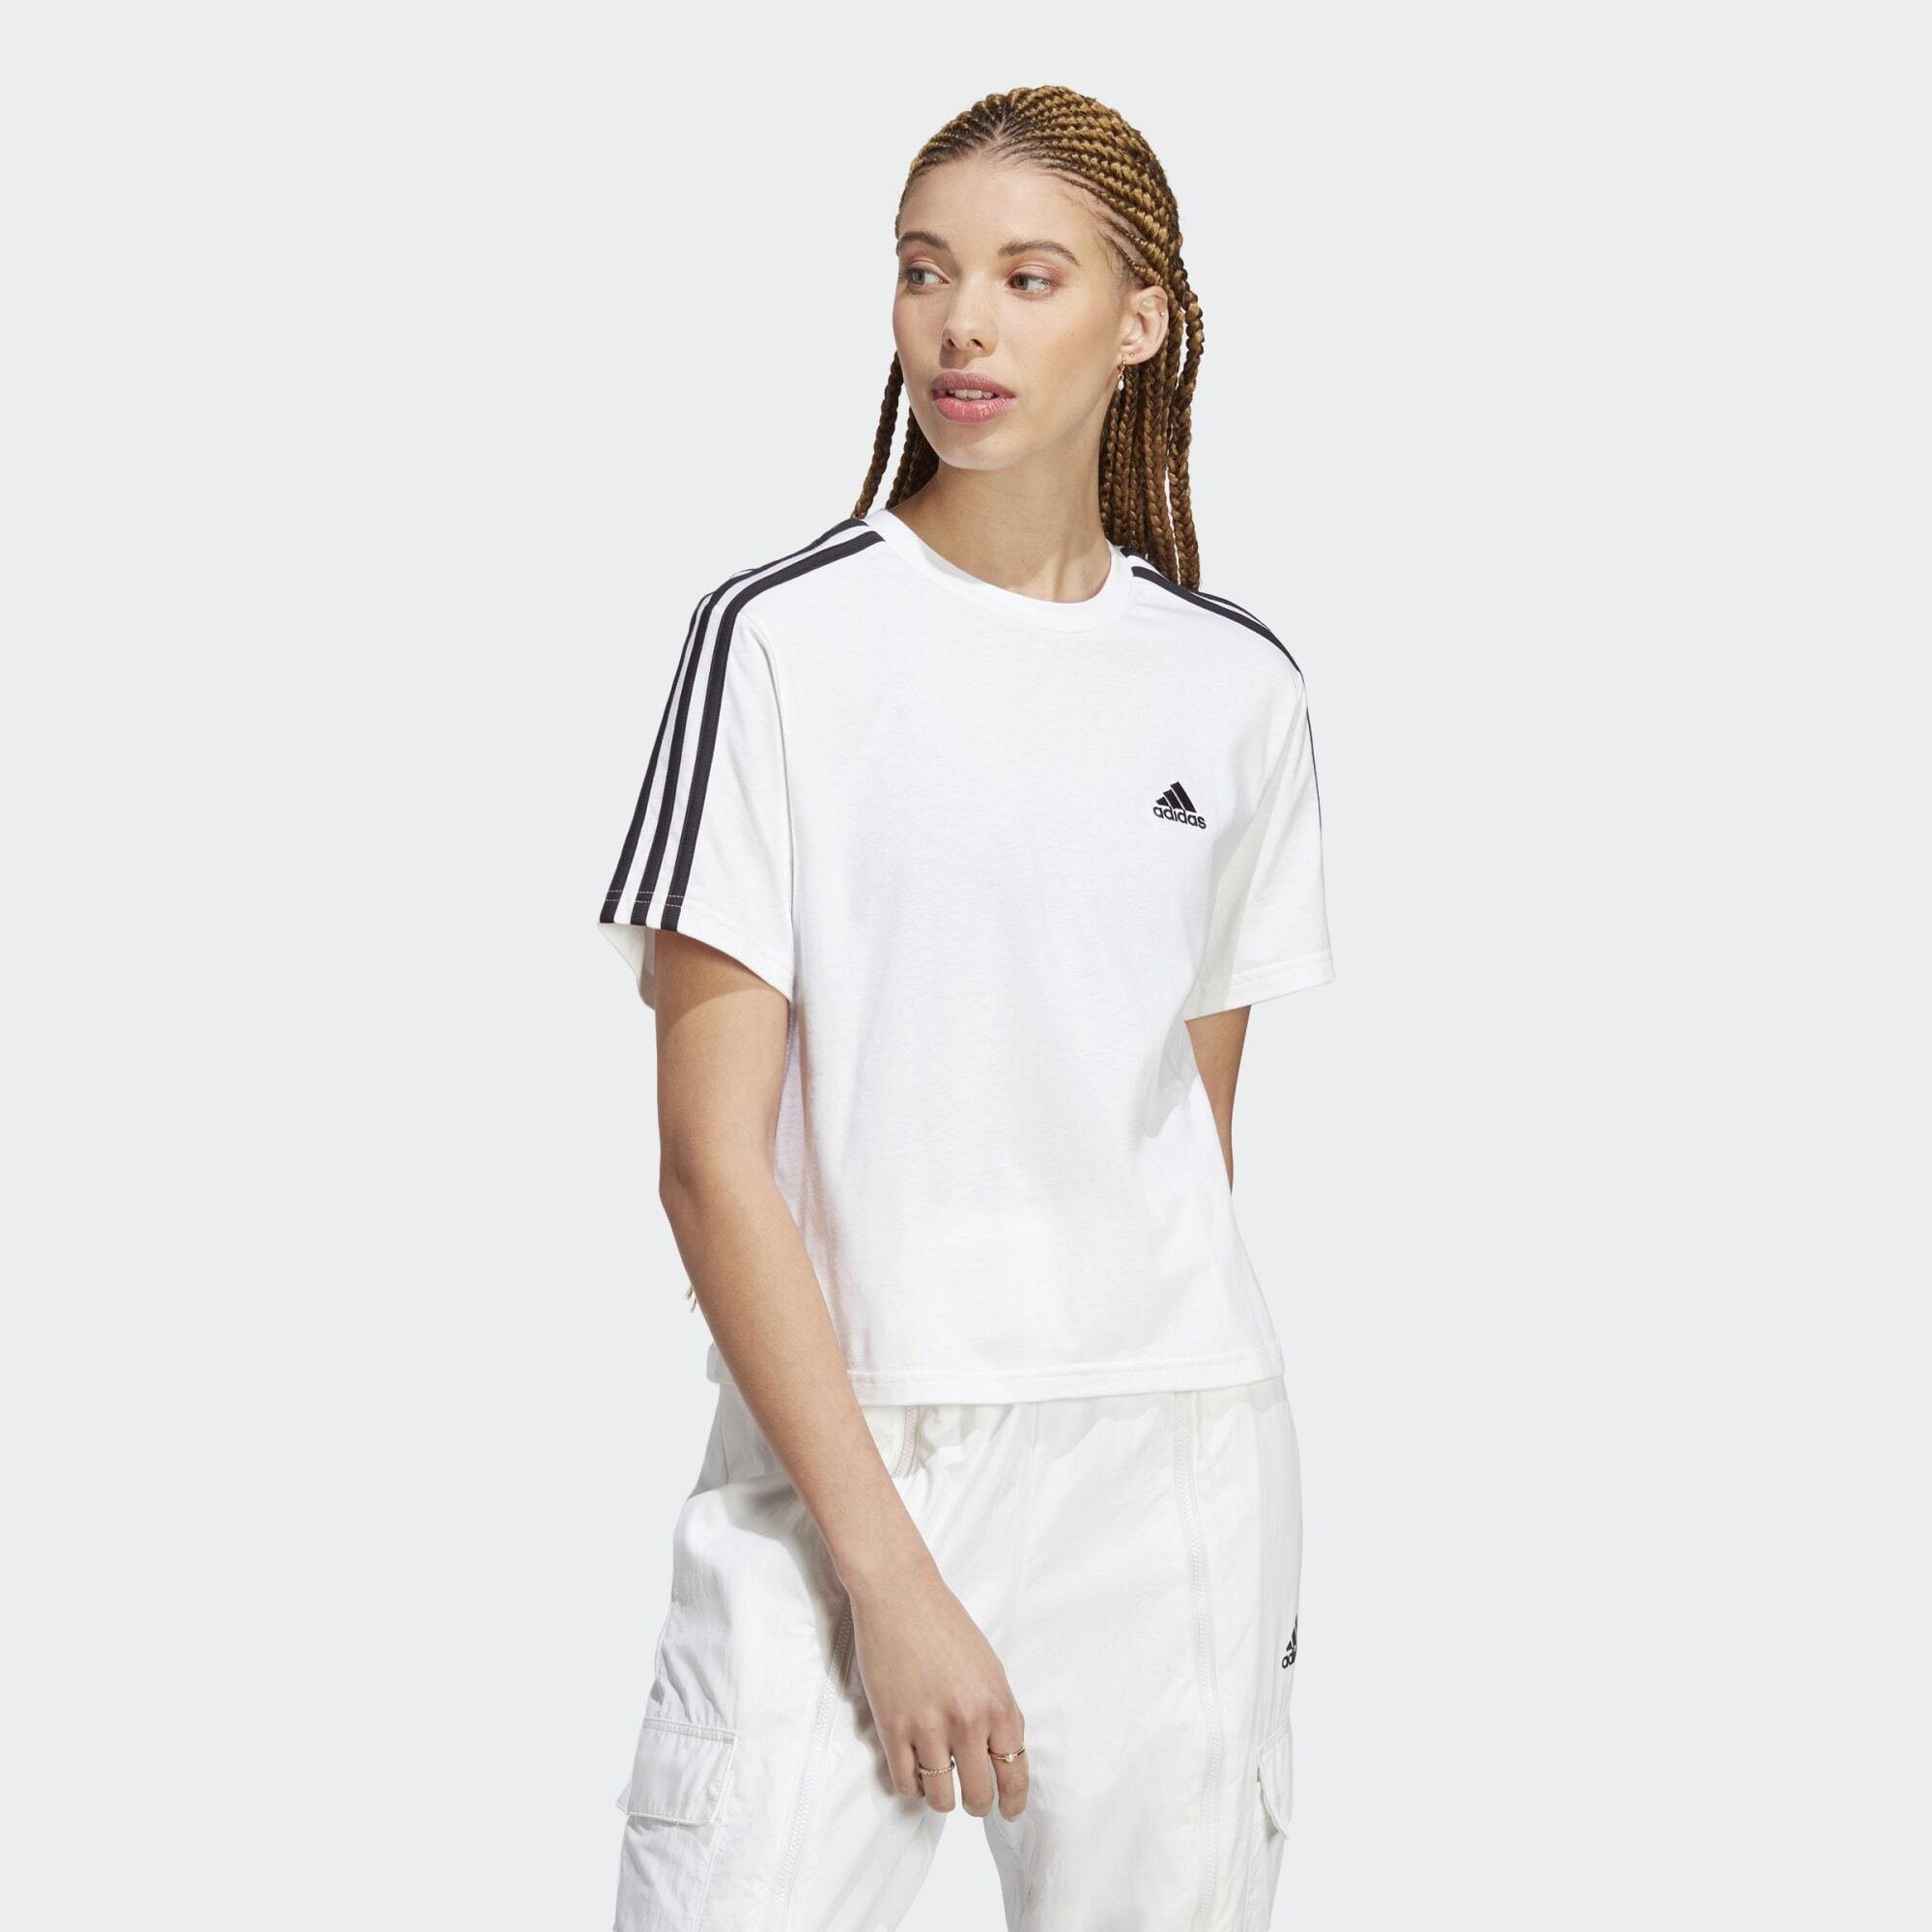 JERSEY White SINGLE Sportswear adidas T-Shirt CROP-TOP Black ESSENTIALS / 3-STREIFEN